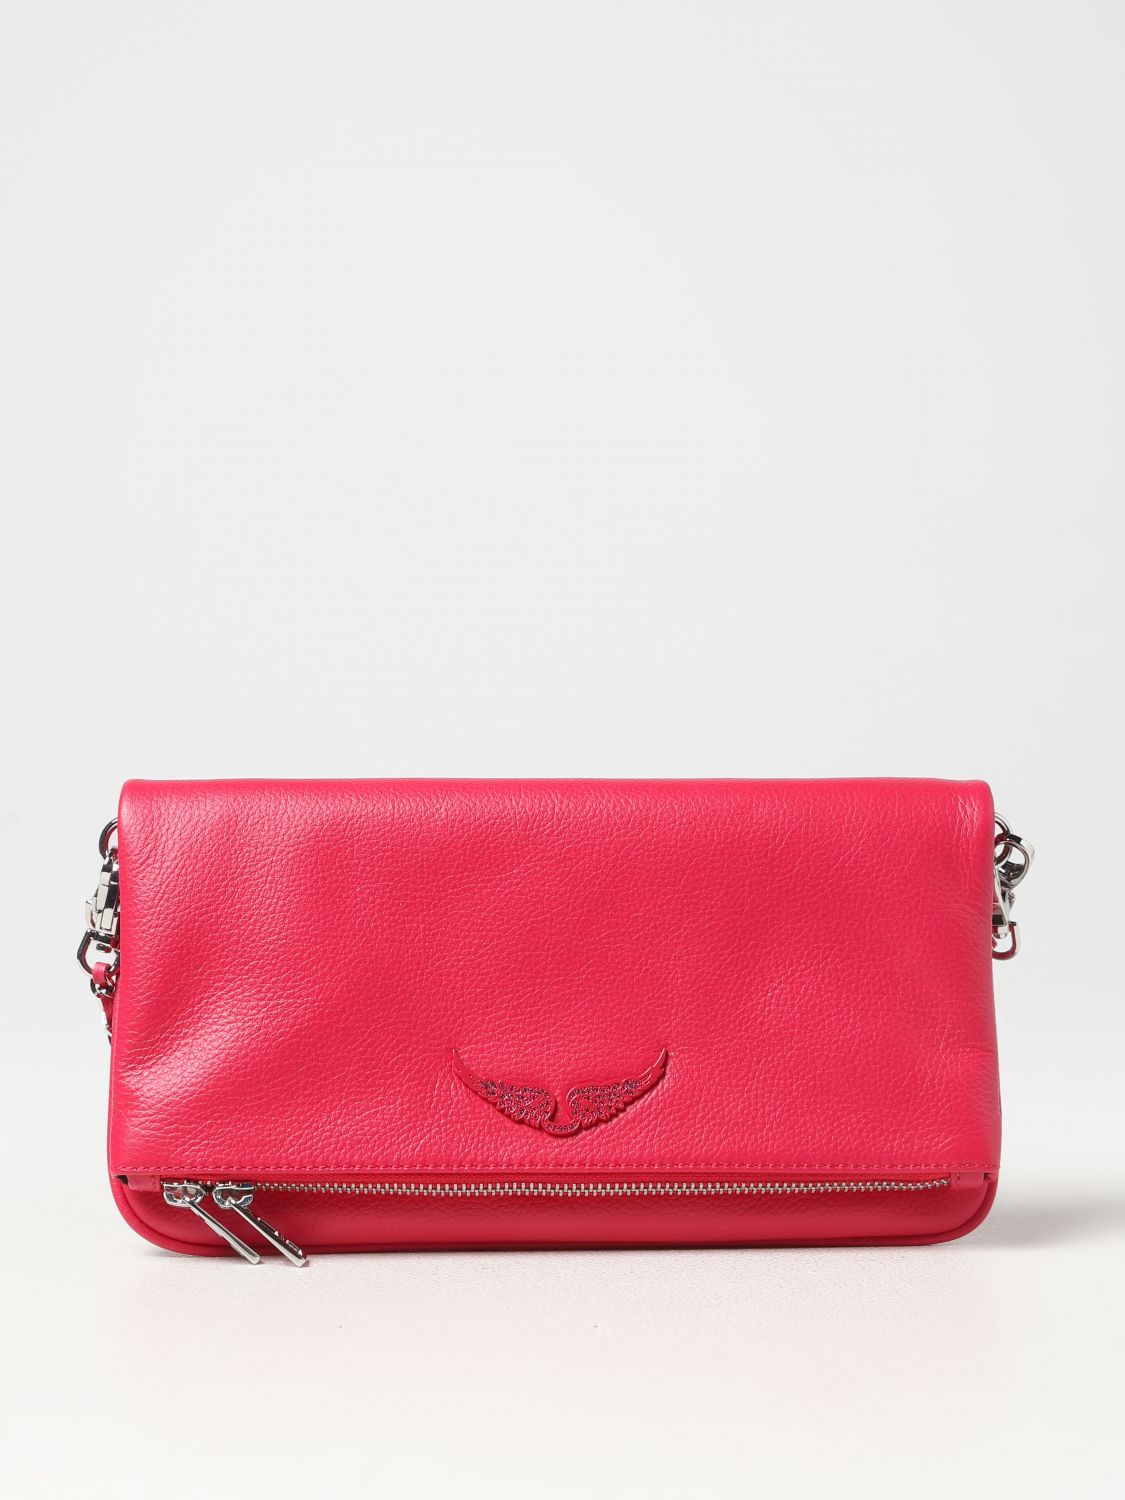 Zadig Voltaire handbag hot pink. New